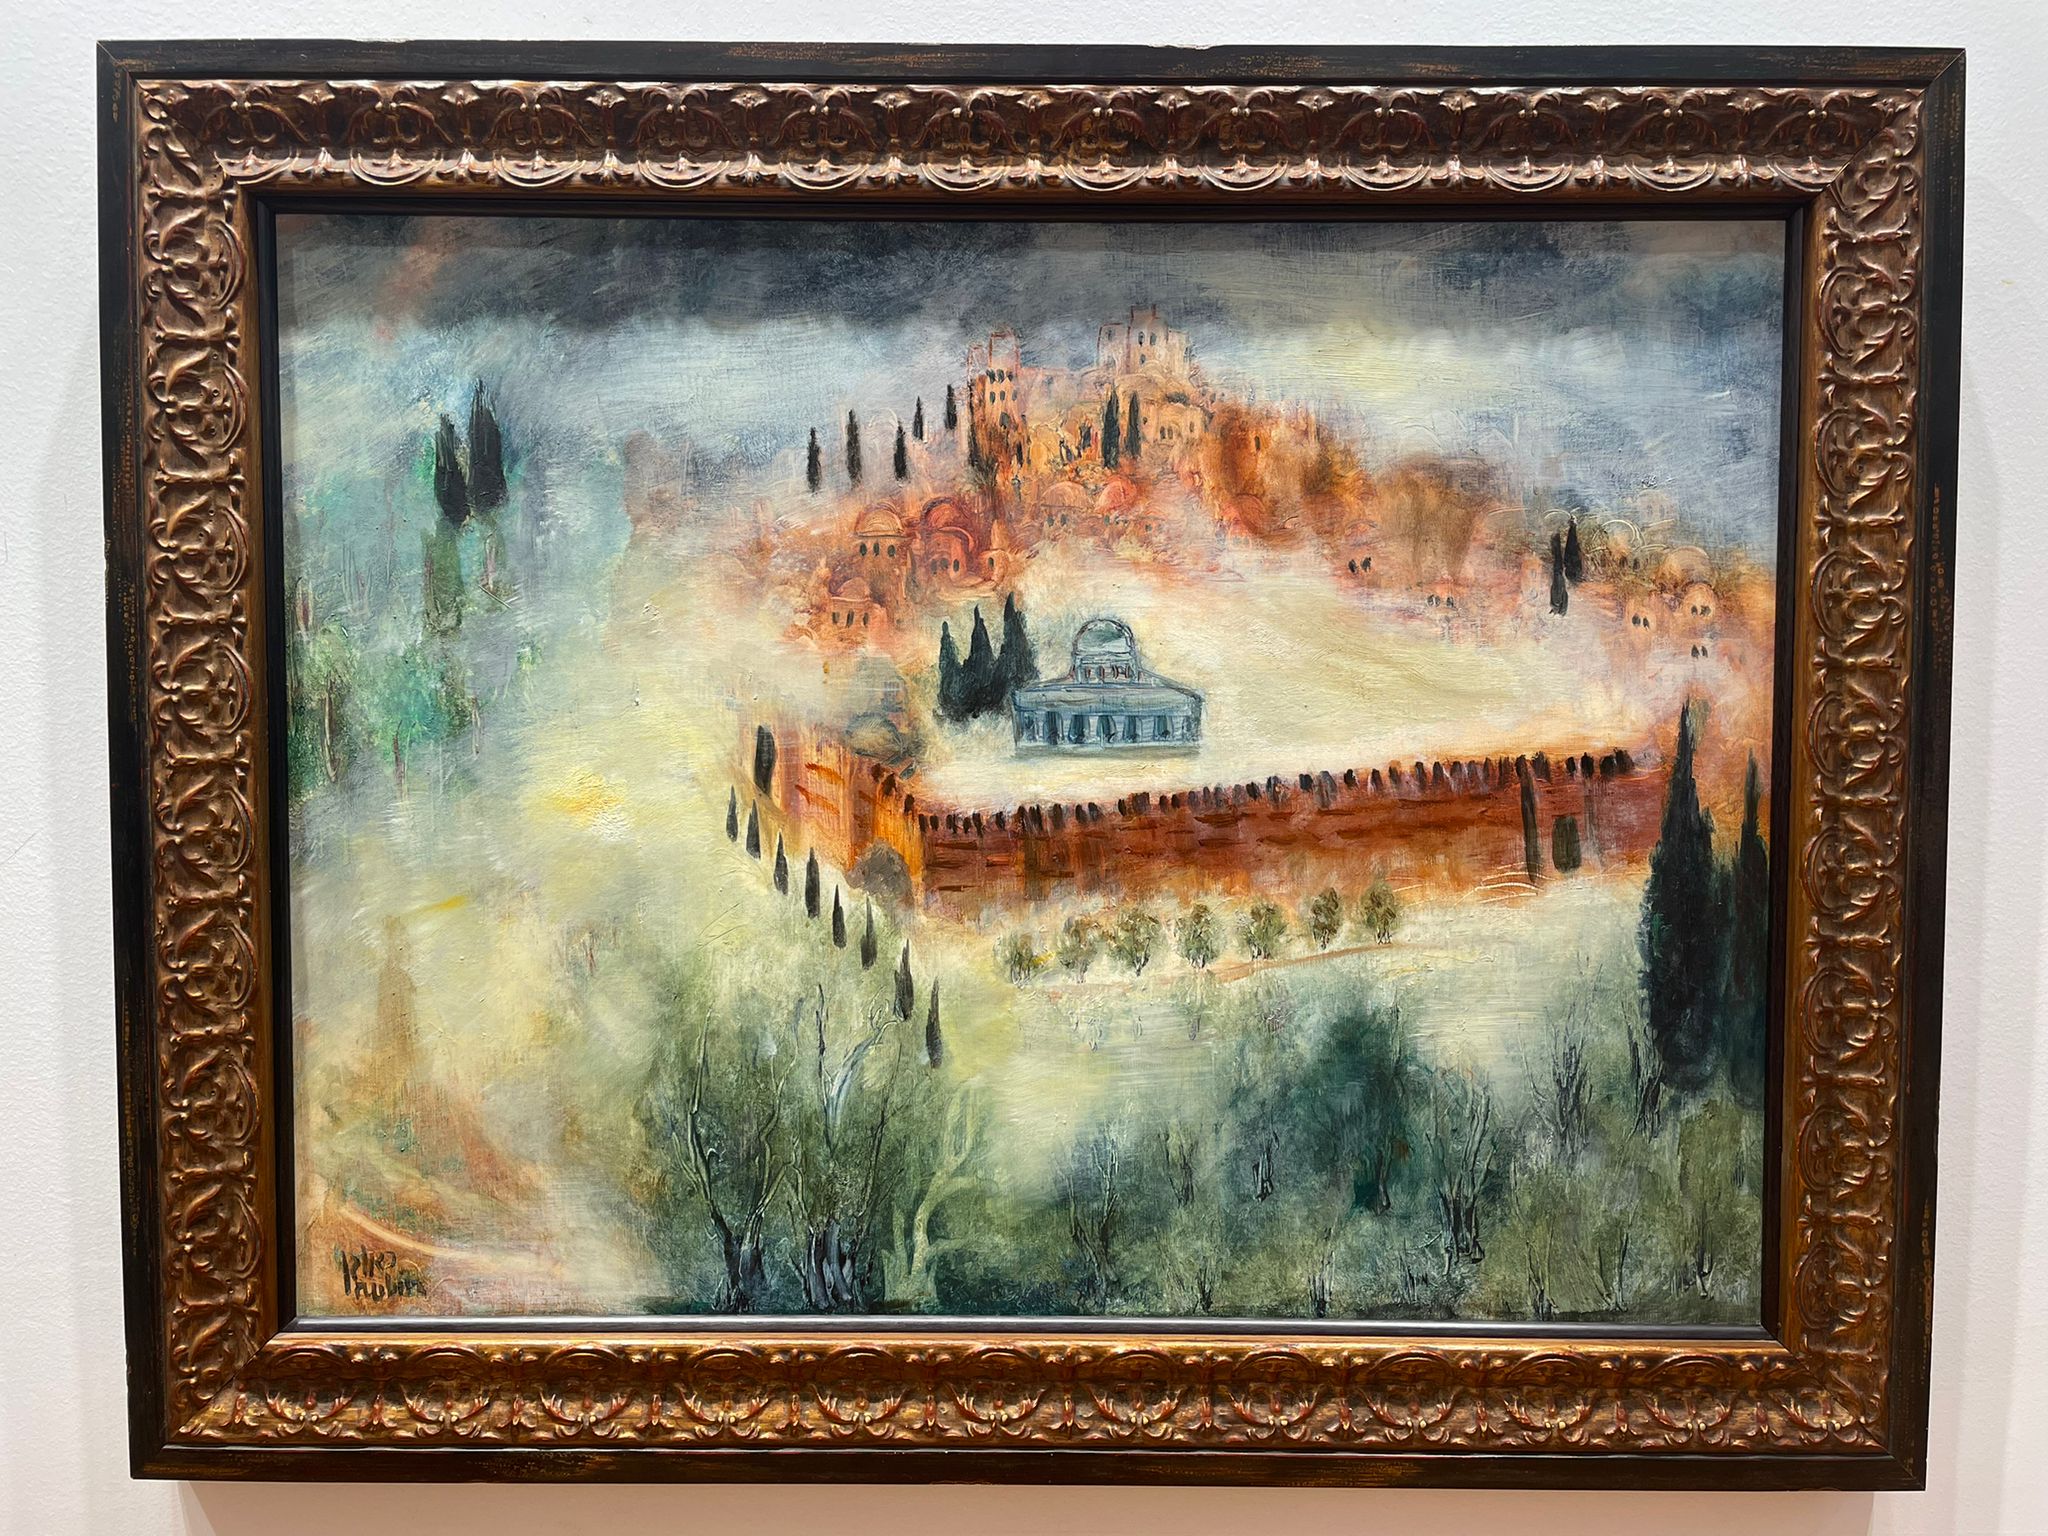 Reuven Rubin - Jerusalem - Gallery - Kings Gallery - Israeli artist - Oil painting.